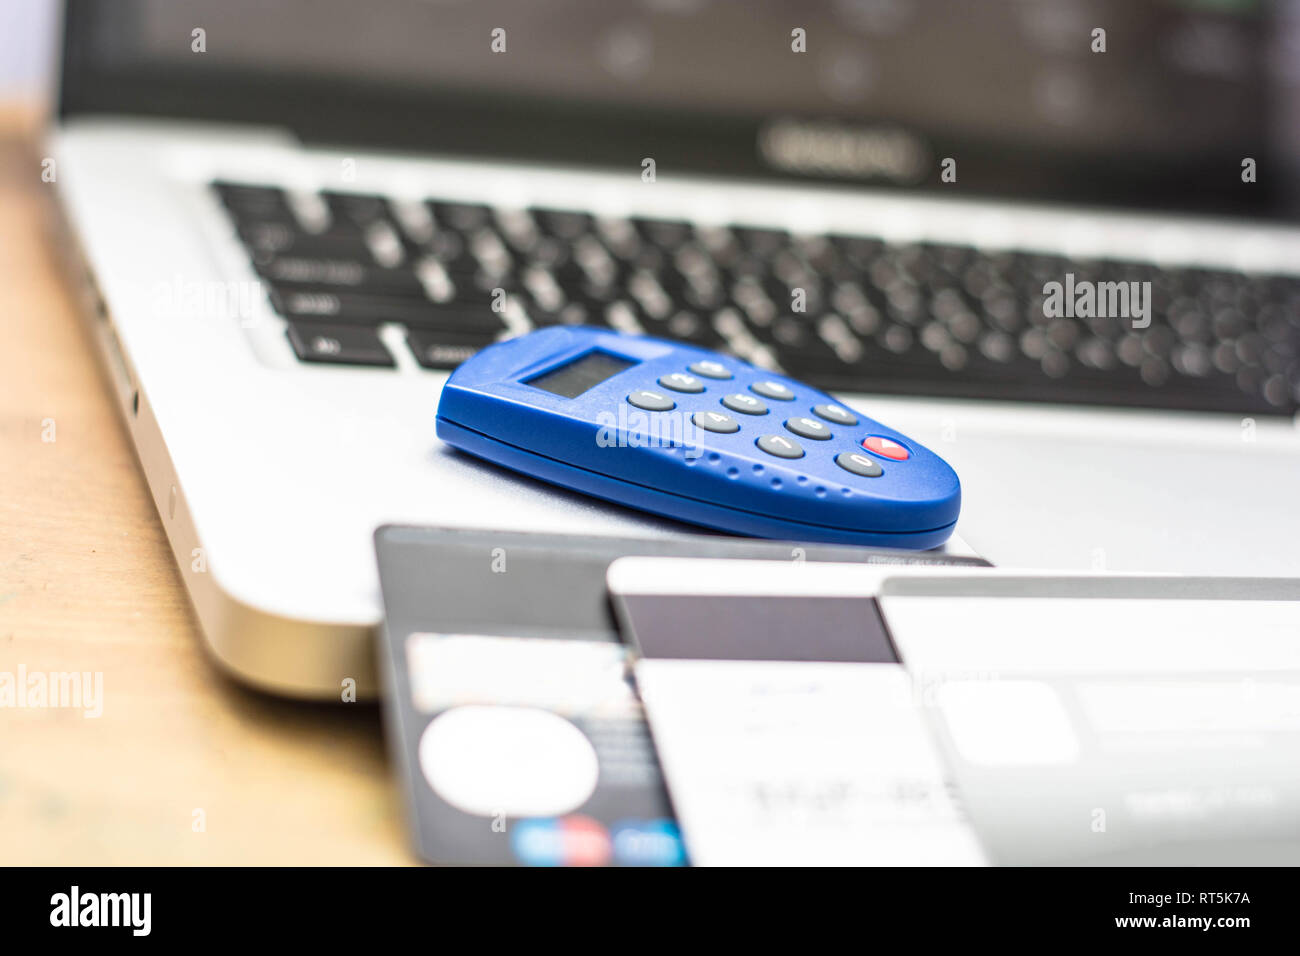 Internet Security token para bancos y tarjetas de crédito en la parte superior del portátil con el teclado como fondo Foto de stock